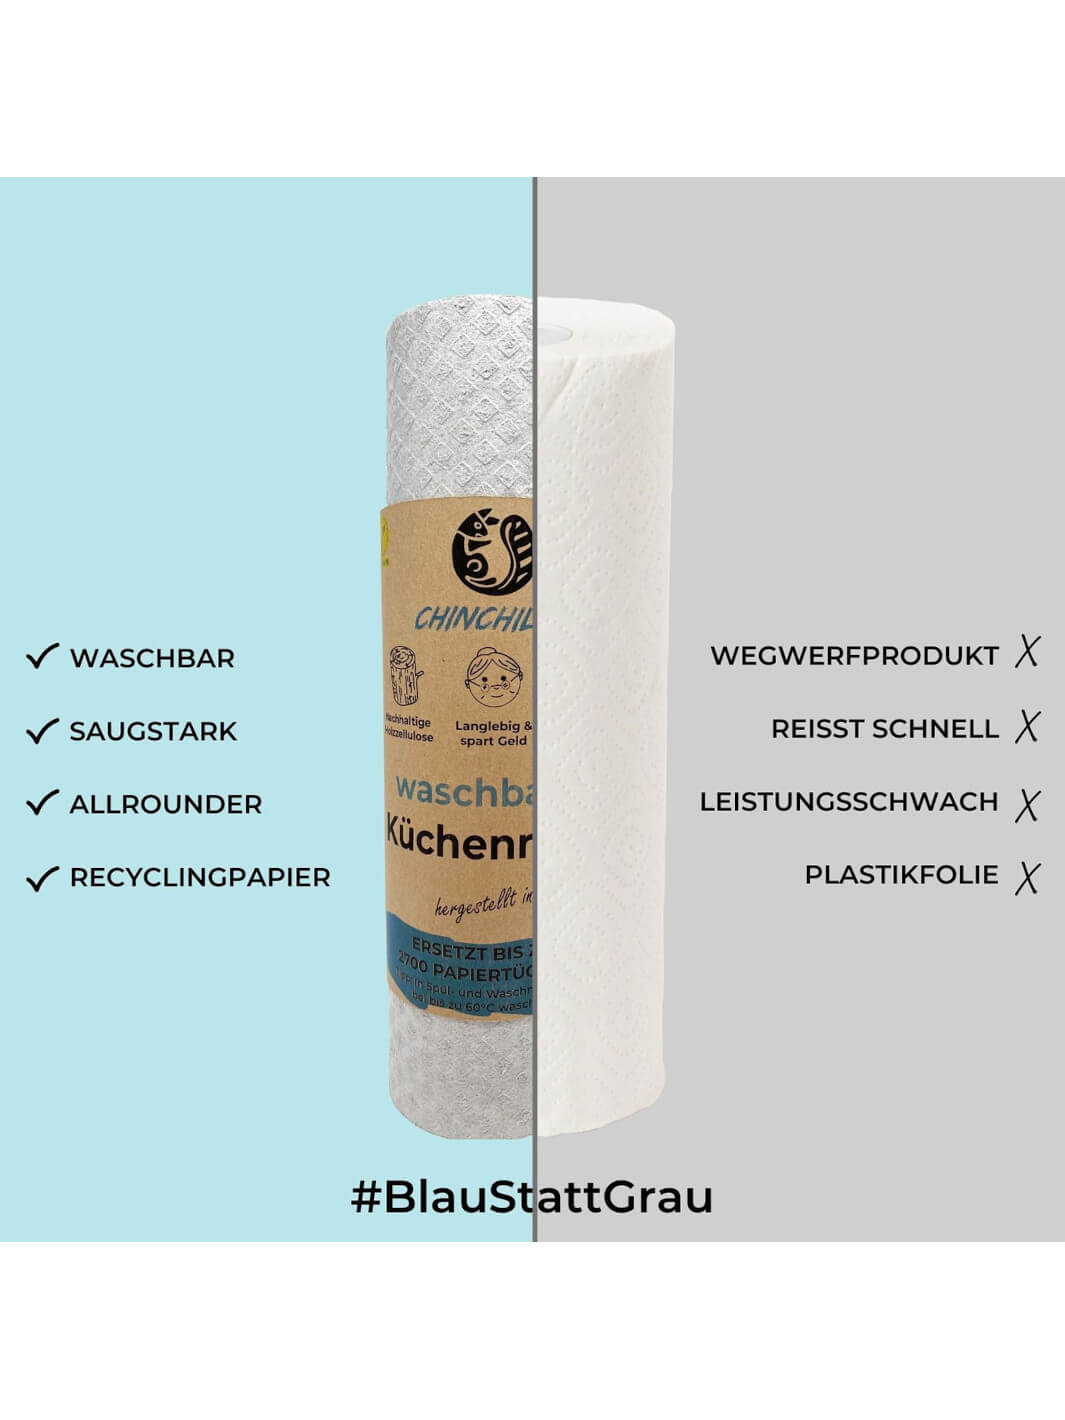 #blaustattgrau waschbare Küchenrolle